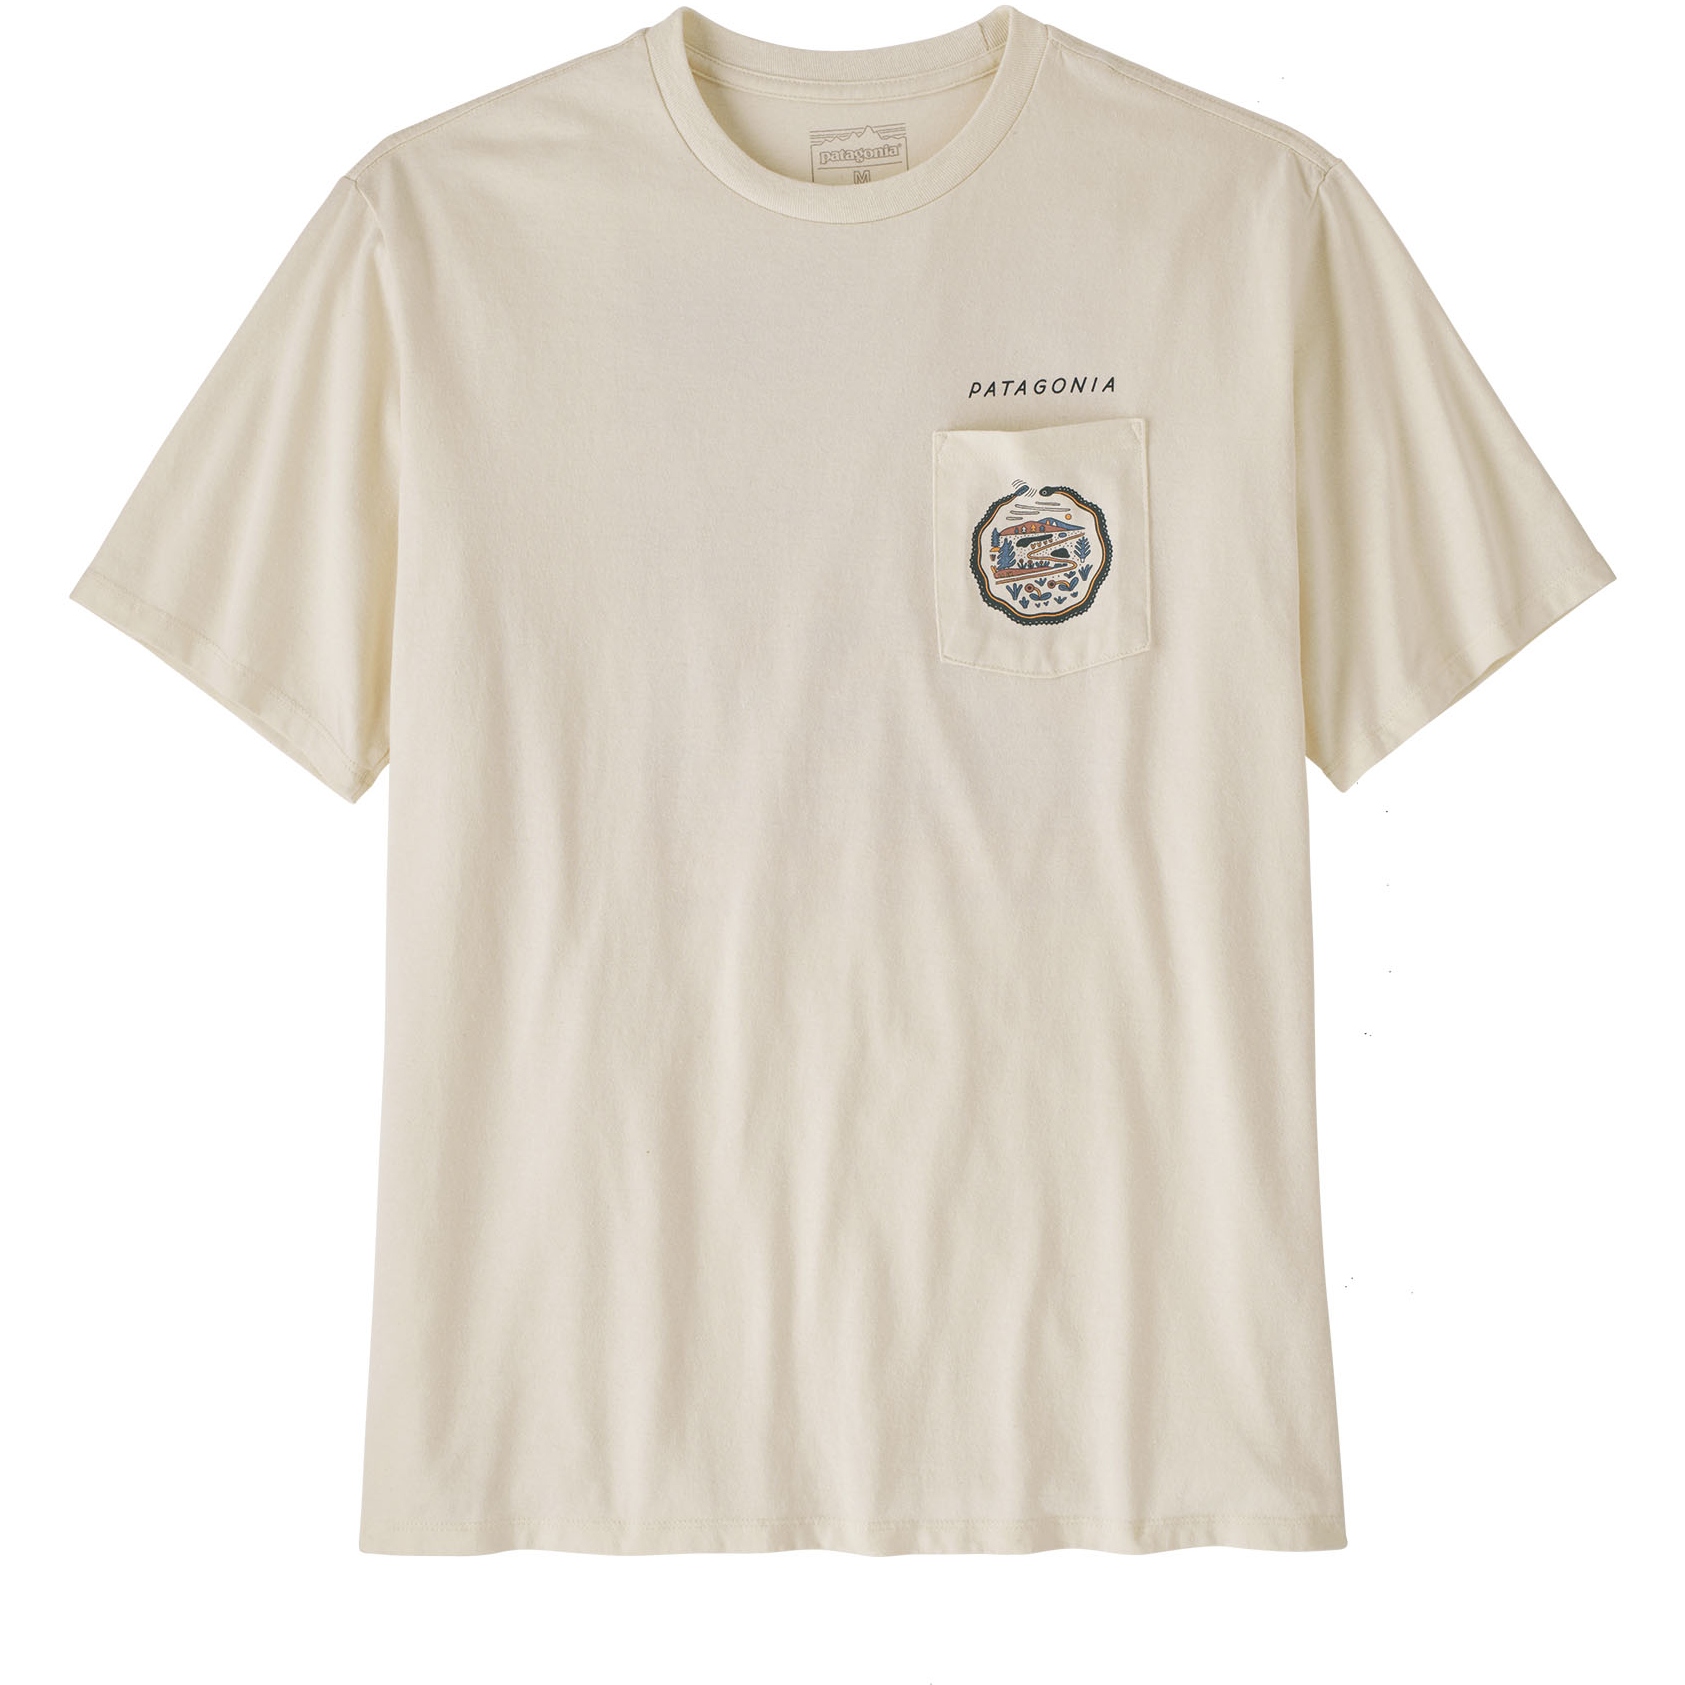 Produktbild von Patagonia Commontrail Pocket Responsibili-Tee T-Shirt Herren - Birch White